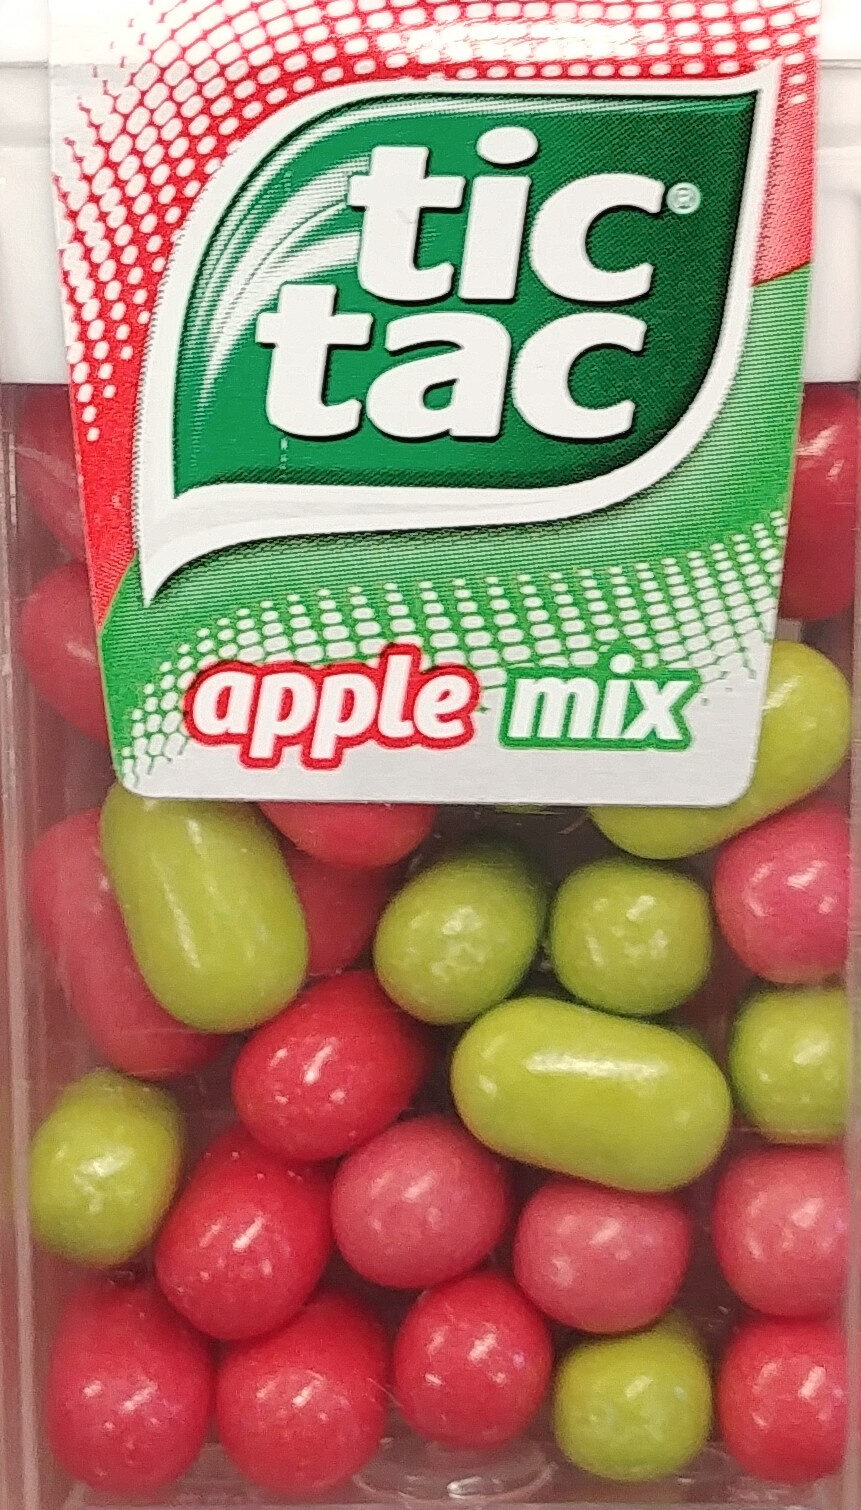 Tic Tac Apple Mix 18G - Produkt - en